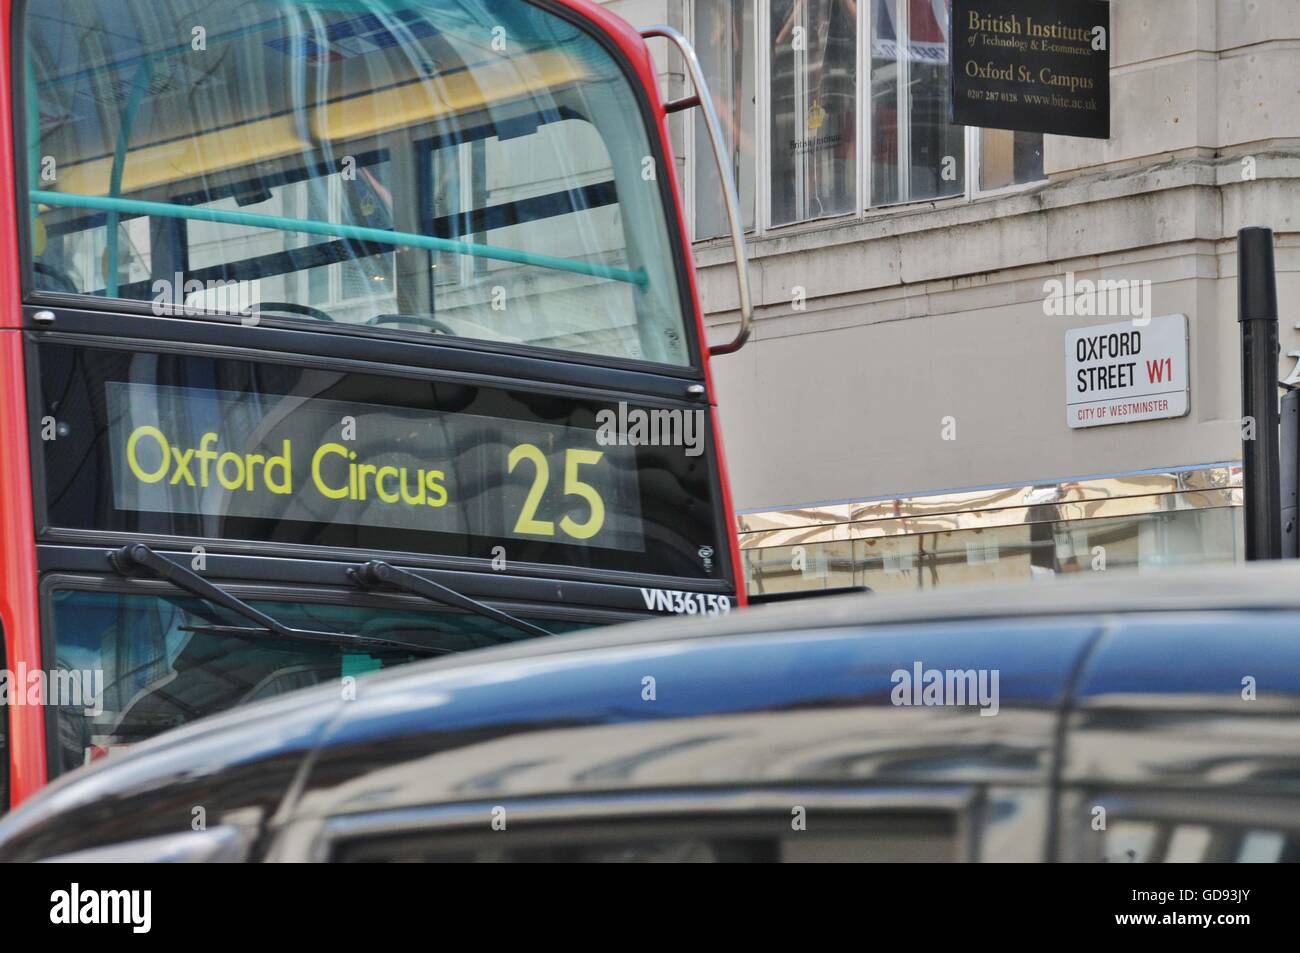 Le maire de Londres, Sadiq Khan, va créer une zone piétonne Oxford Street ; dans la rue du même nom dans l'est, jusqu'à Bond Street à l'Ouest. L'objectif est de nettoyer les rues record pour la mauvaise qualité de l'air : le pire dans le monde. Le programme entrera en vigueur en 2020 Banque D'Images